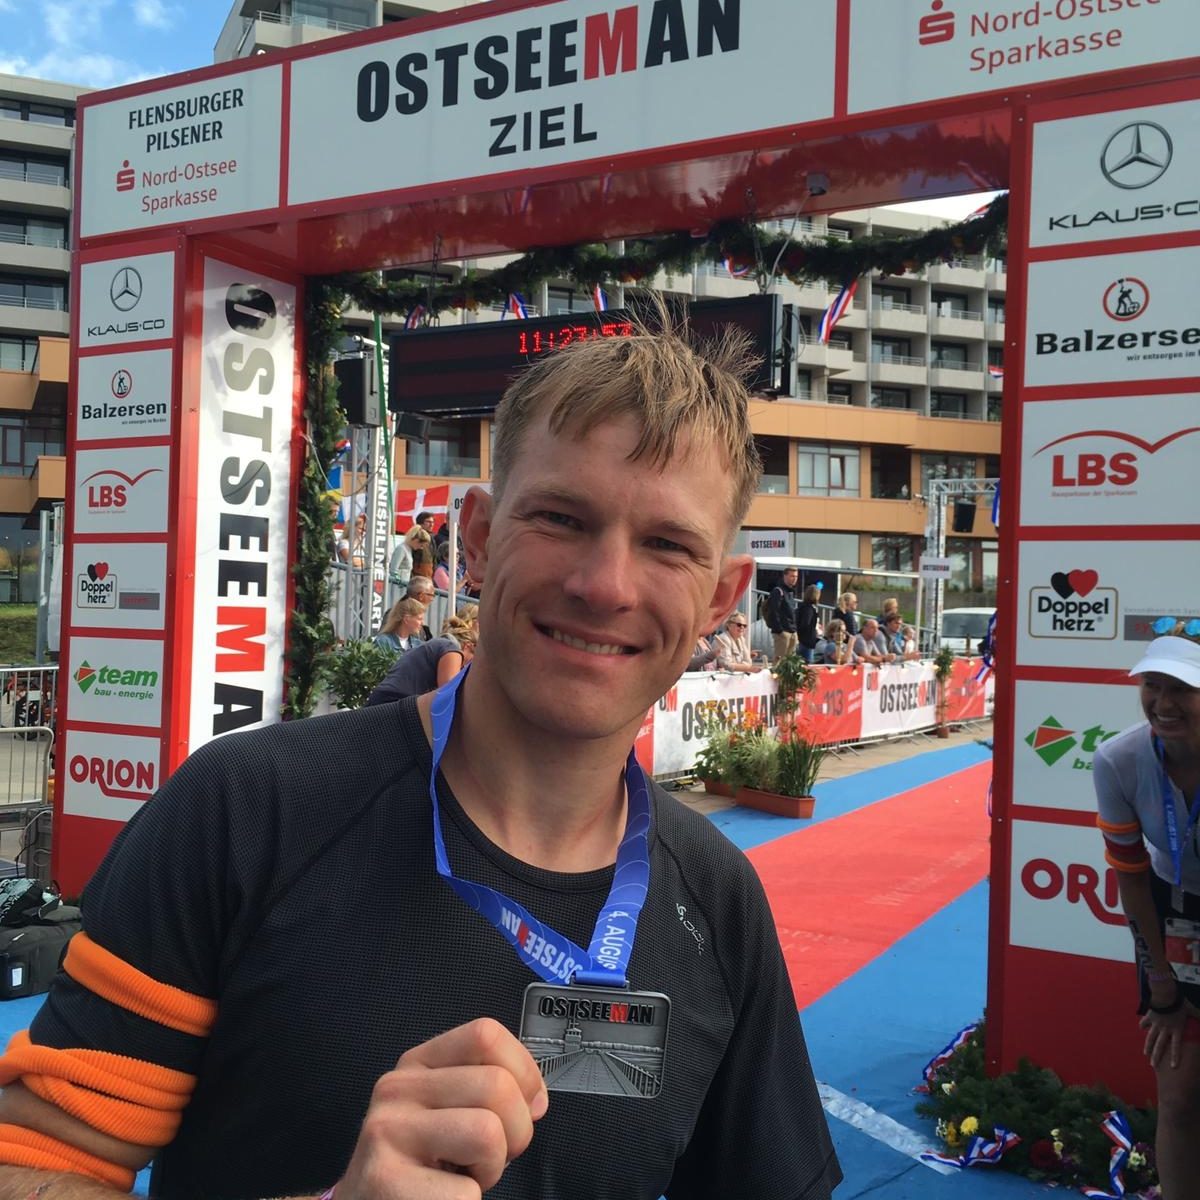 Triathlon Ironman - Ostseeman 2019